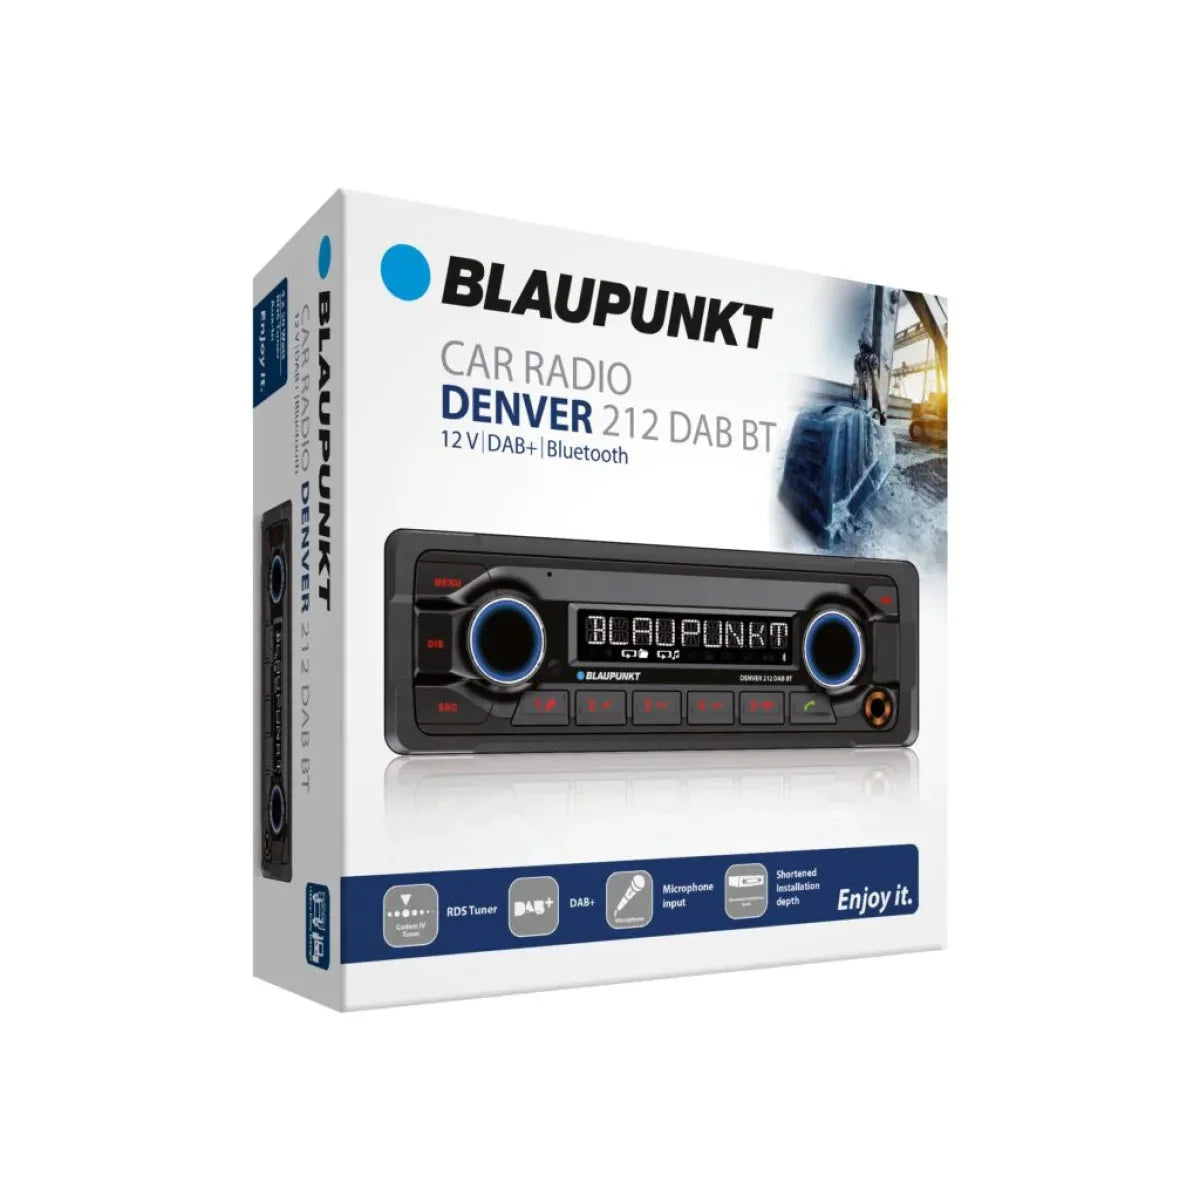 Blaupunkt-Denver 212DAB BT-1-DIN Autoradio-Masori.de